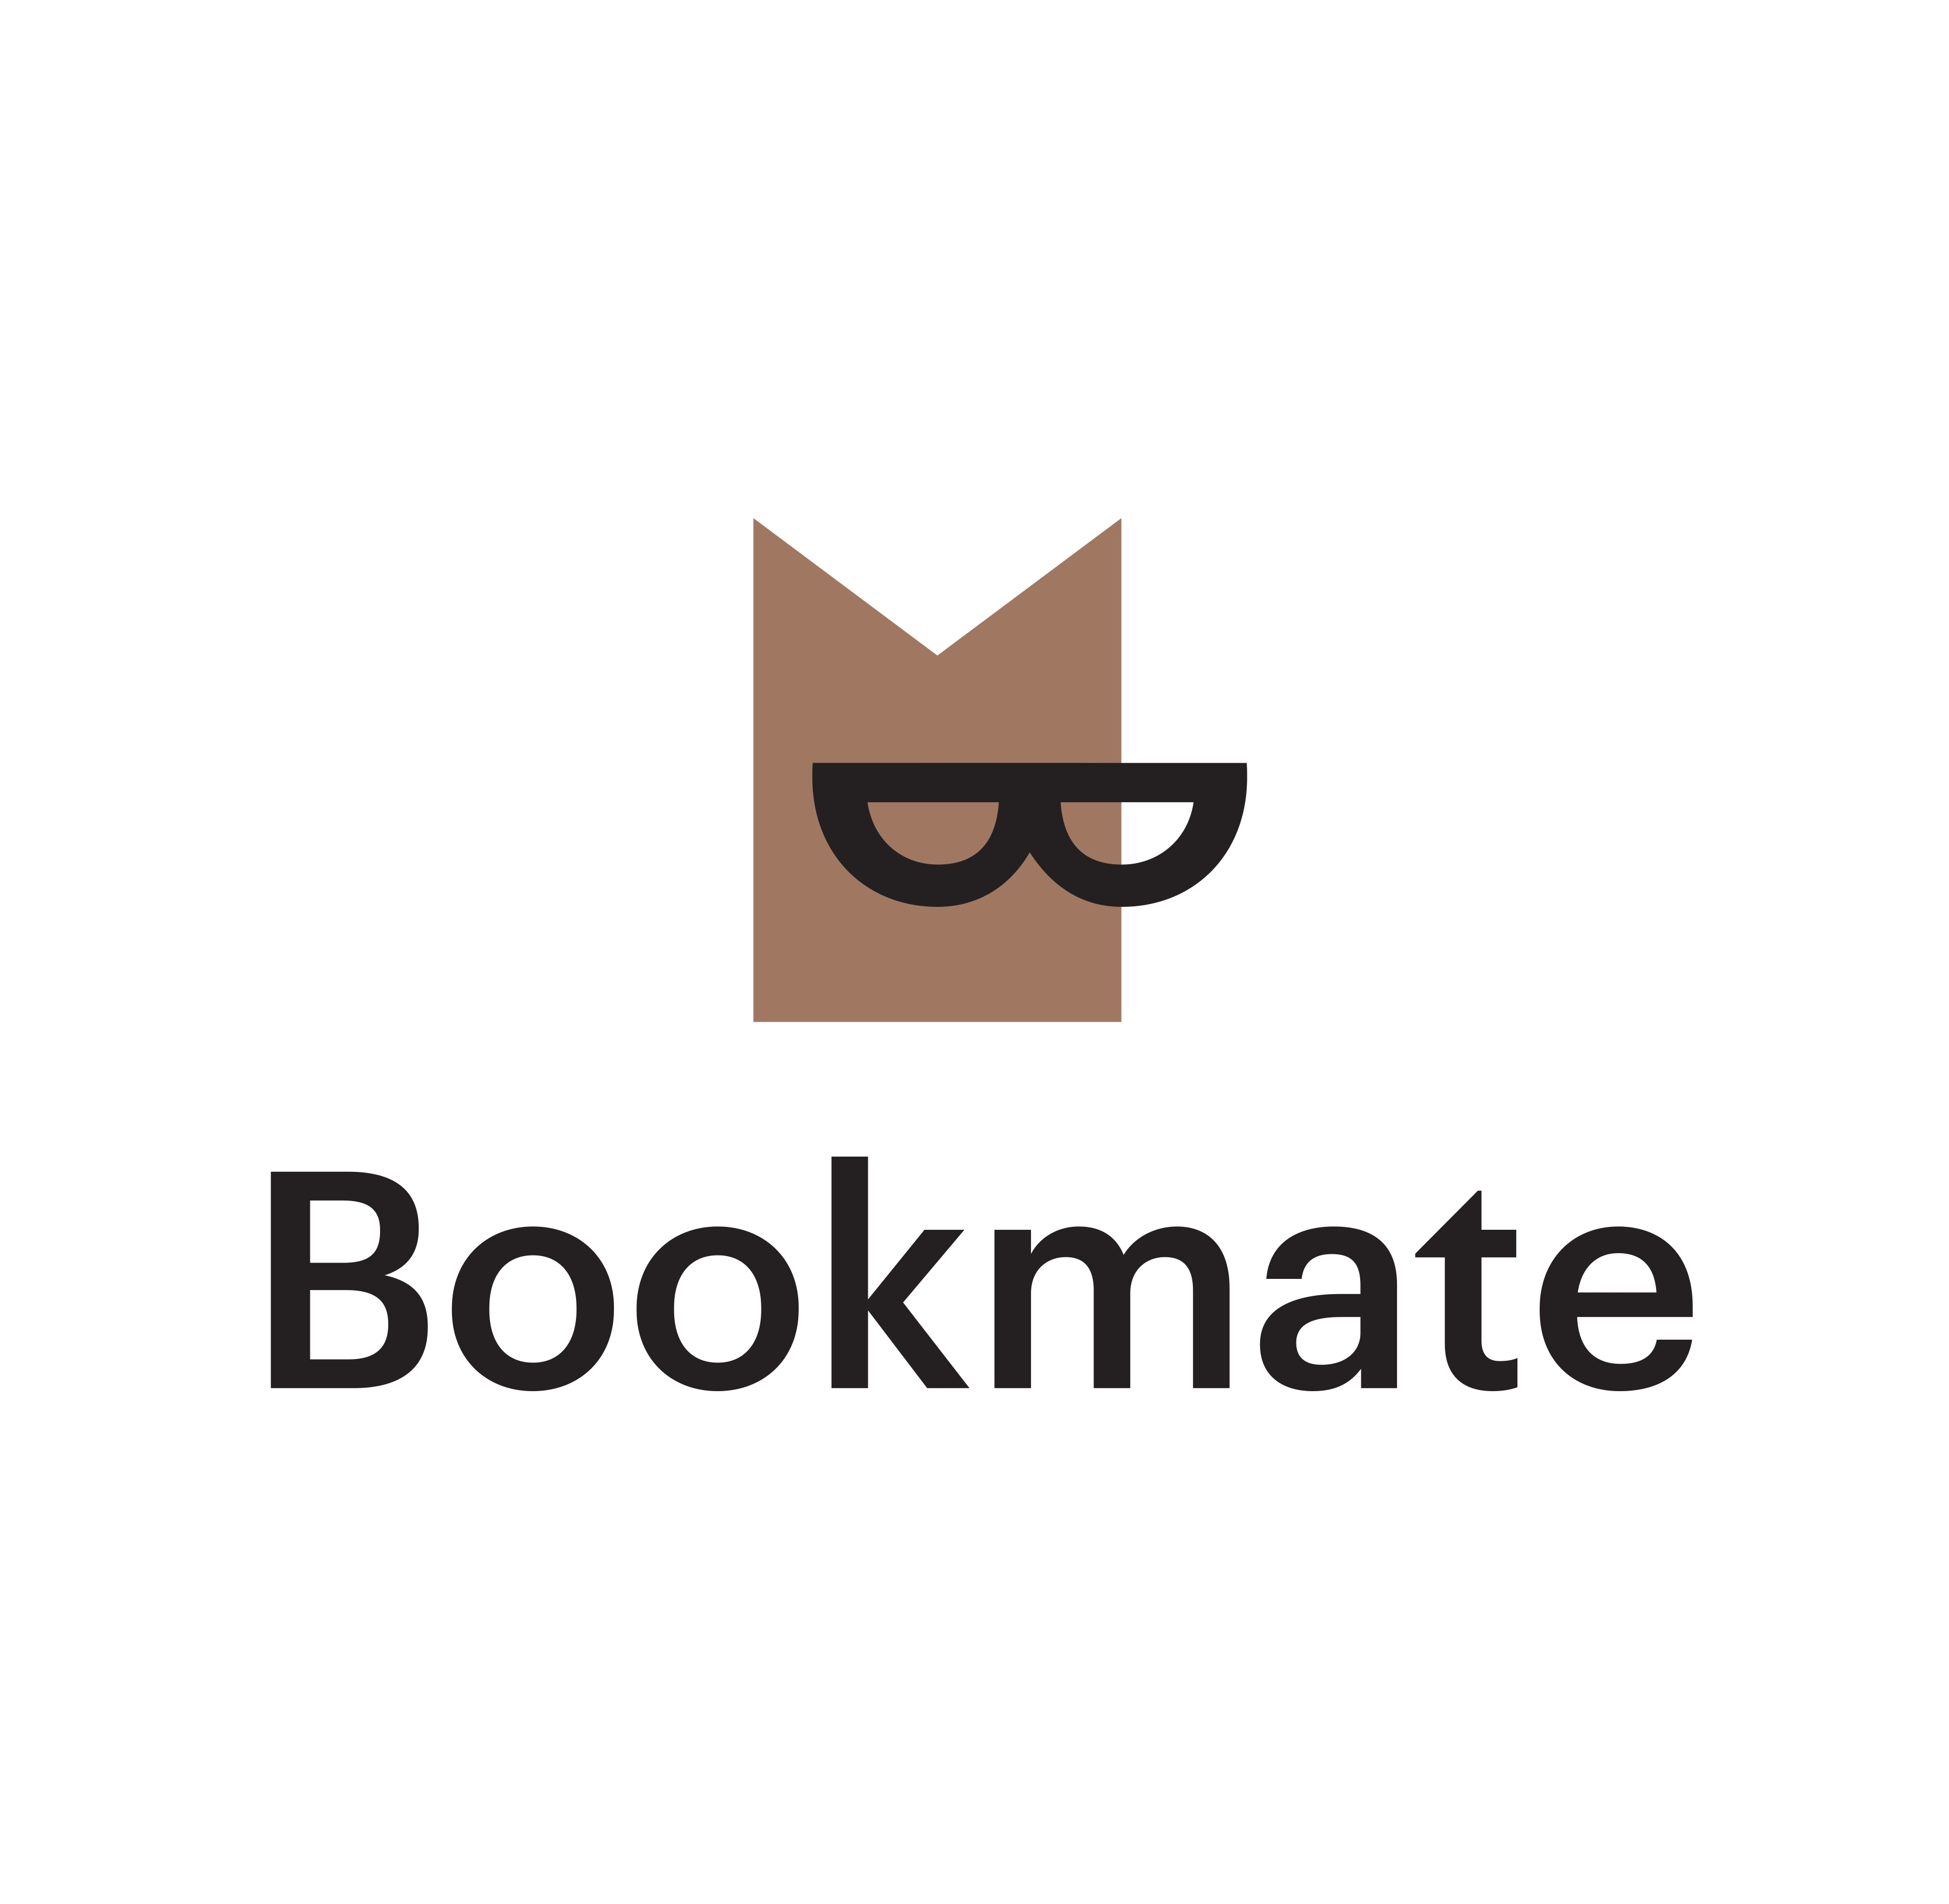 logo Bookmate